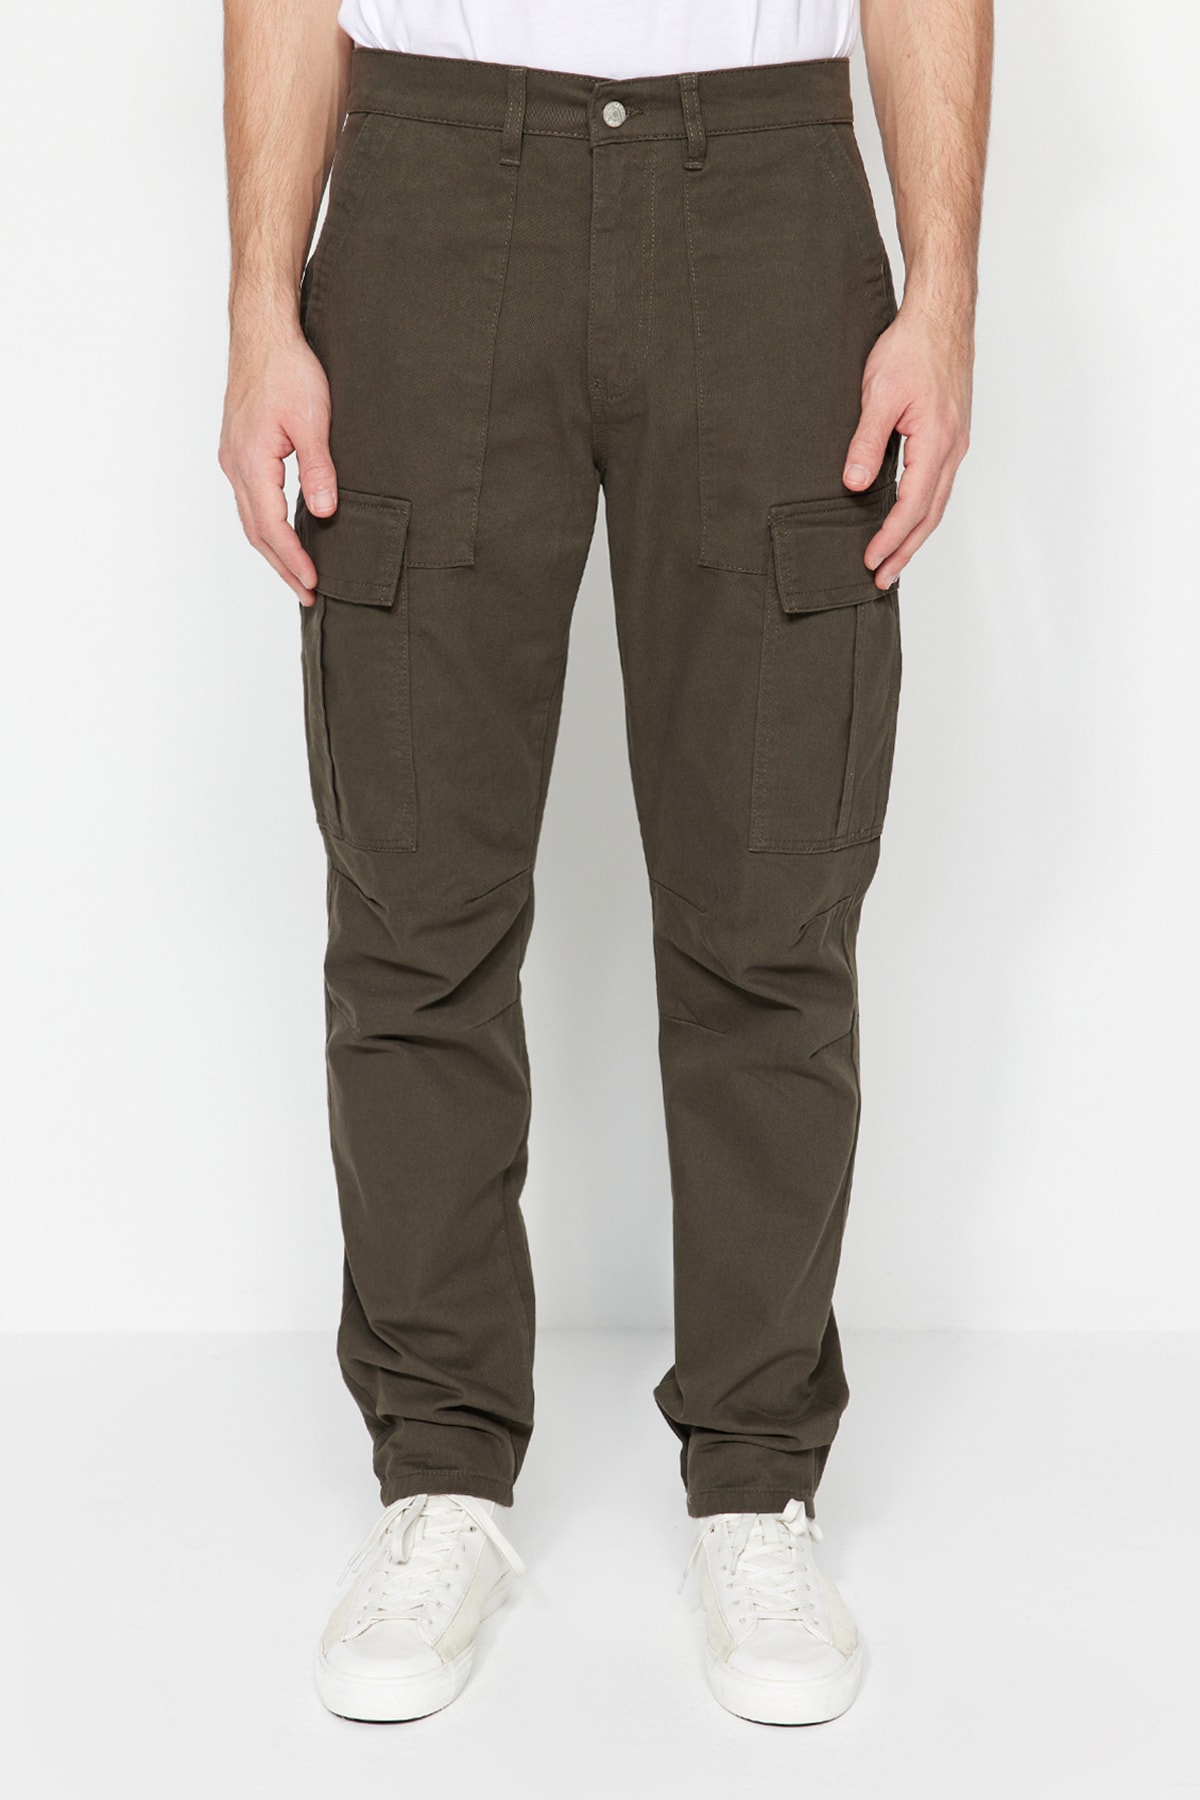 Брюки Trendyol карго, темно-зеленый брюки карго размер 34 50 коричневый зеленый